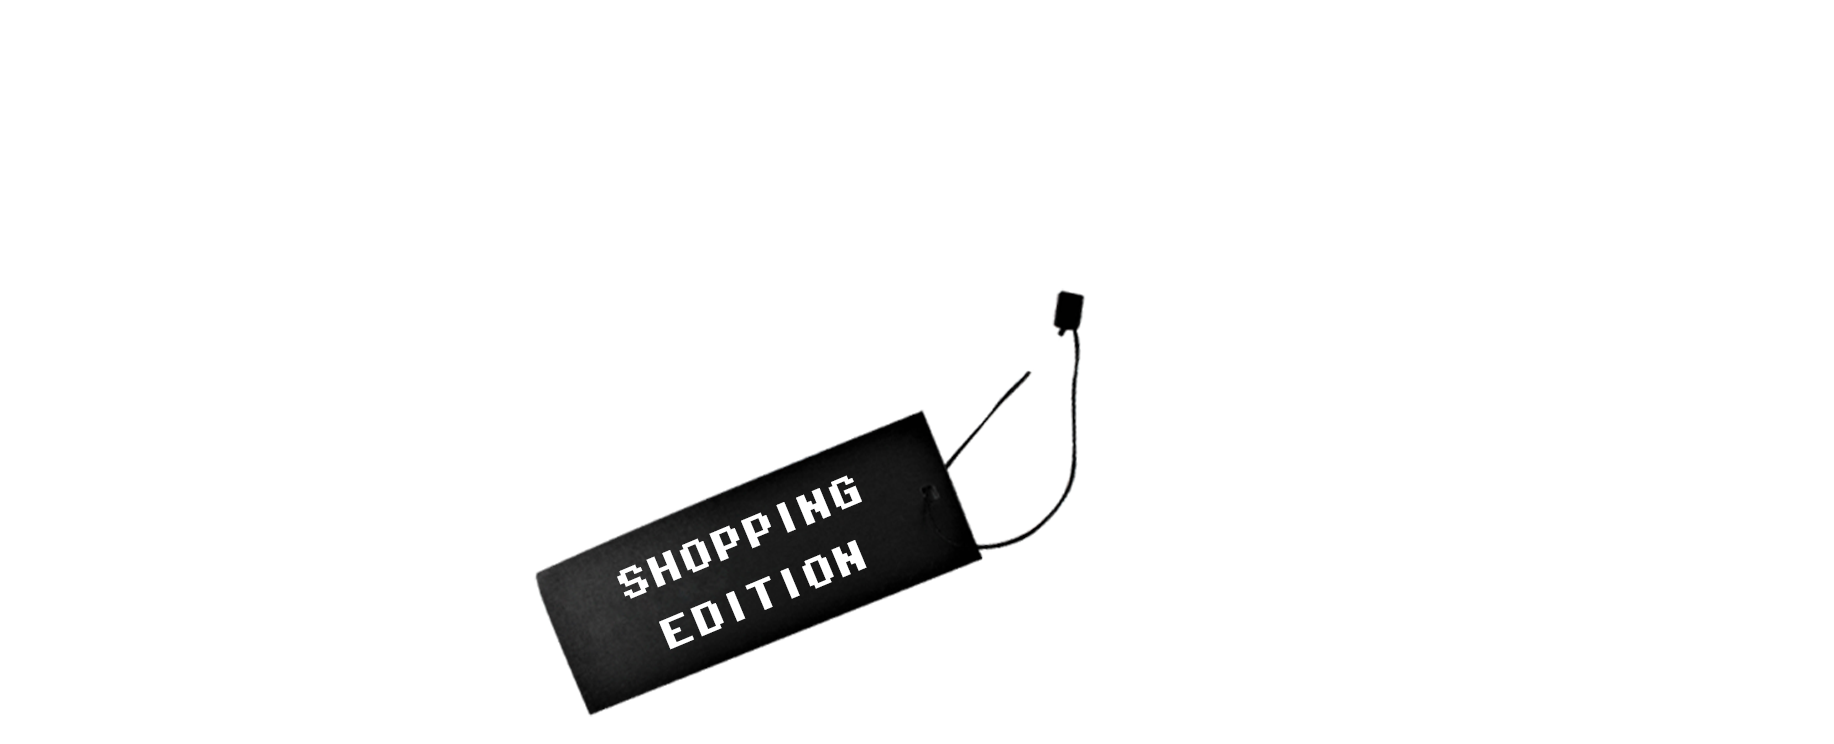 Cosmopolitan Shopping Edition